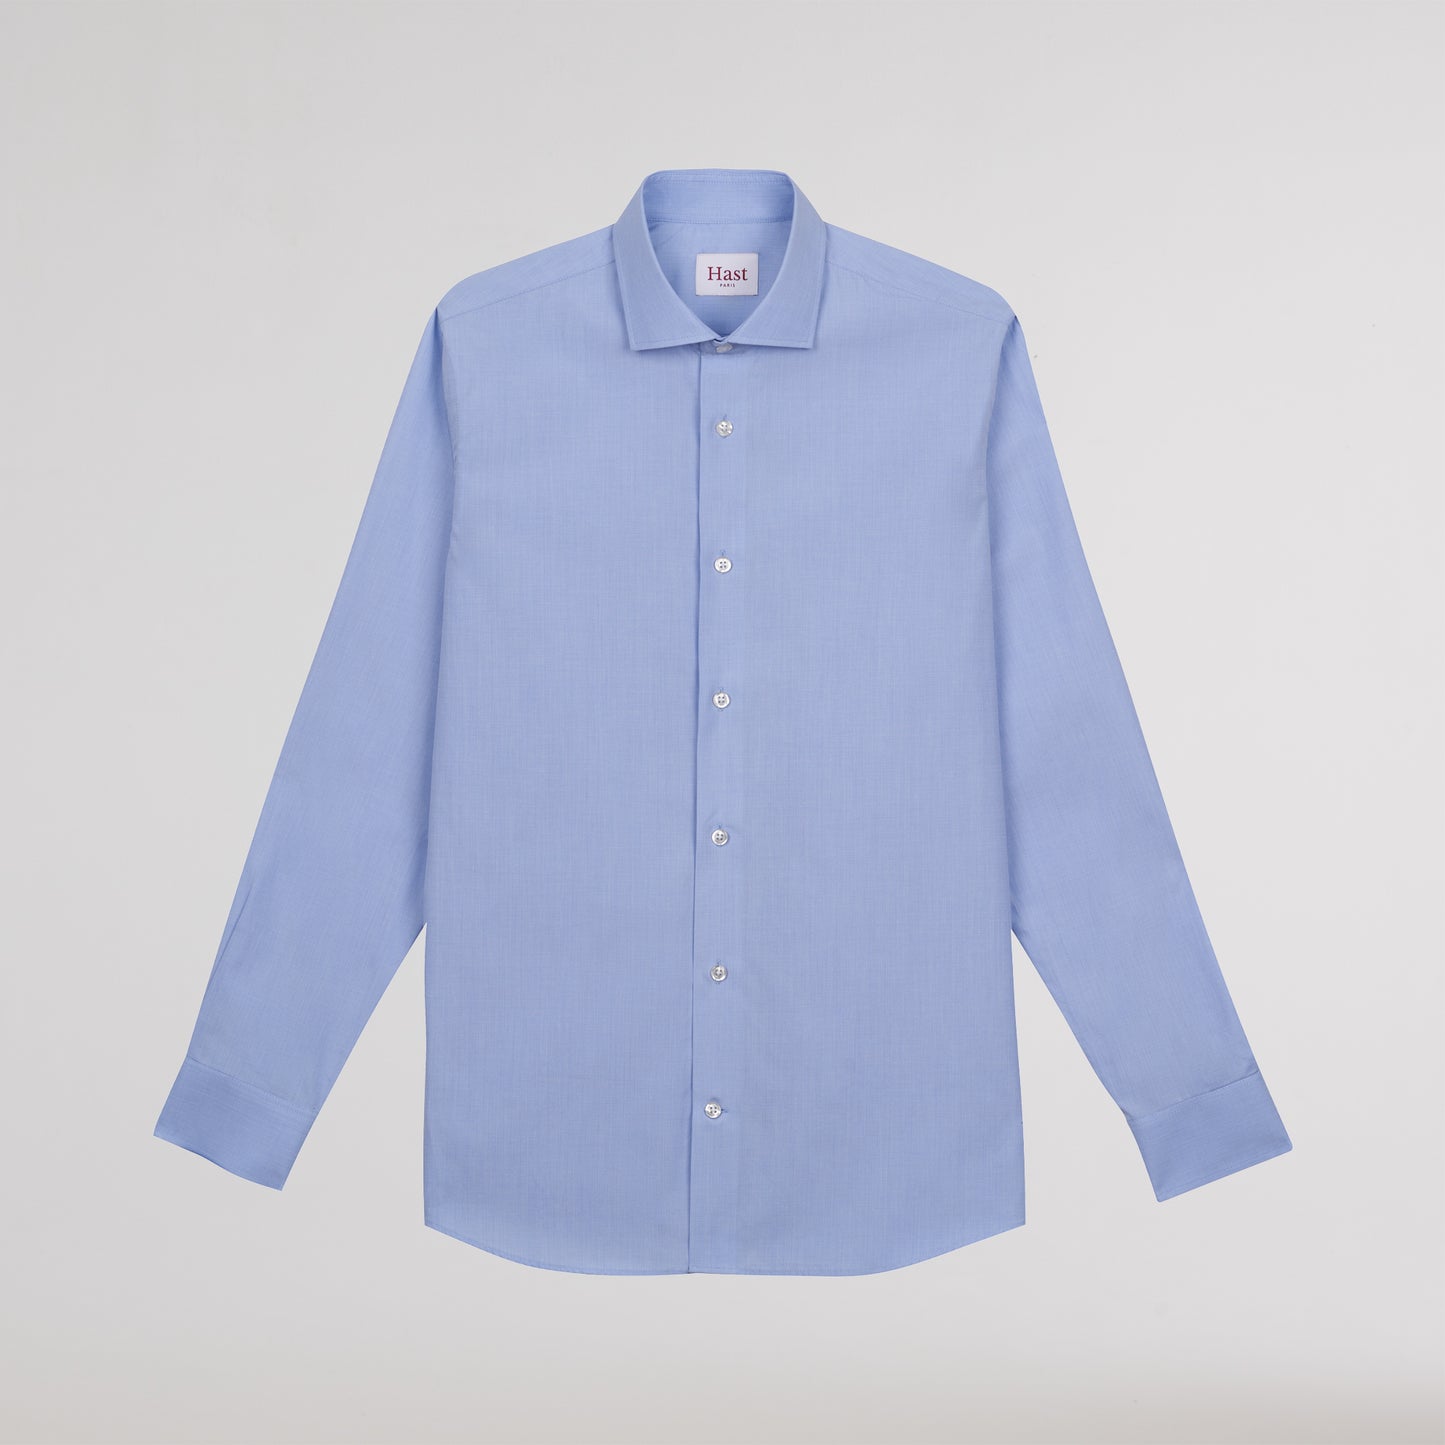 Chemise en fil-à-fil double retors bleu et blanc